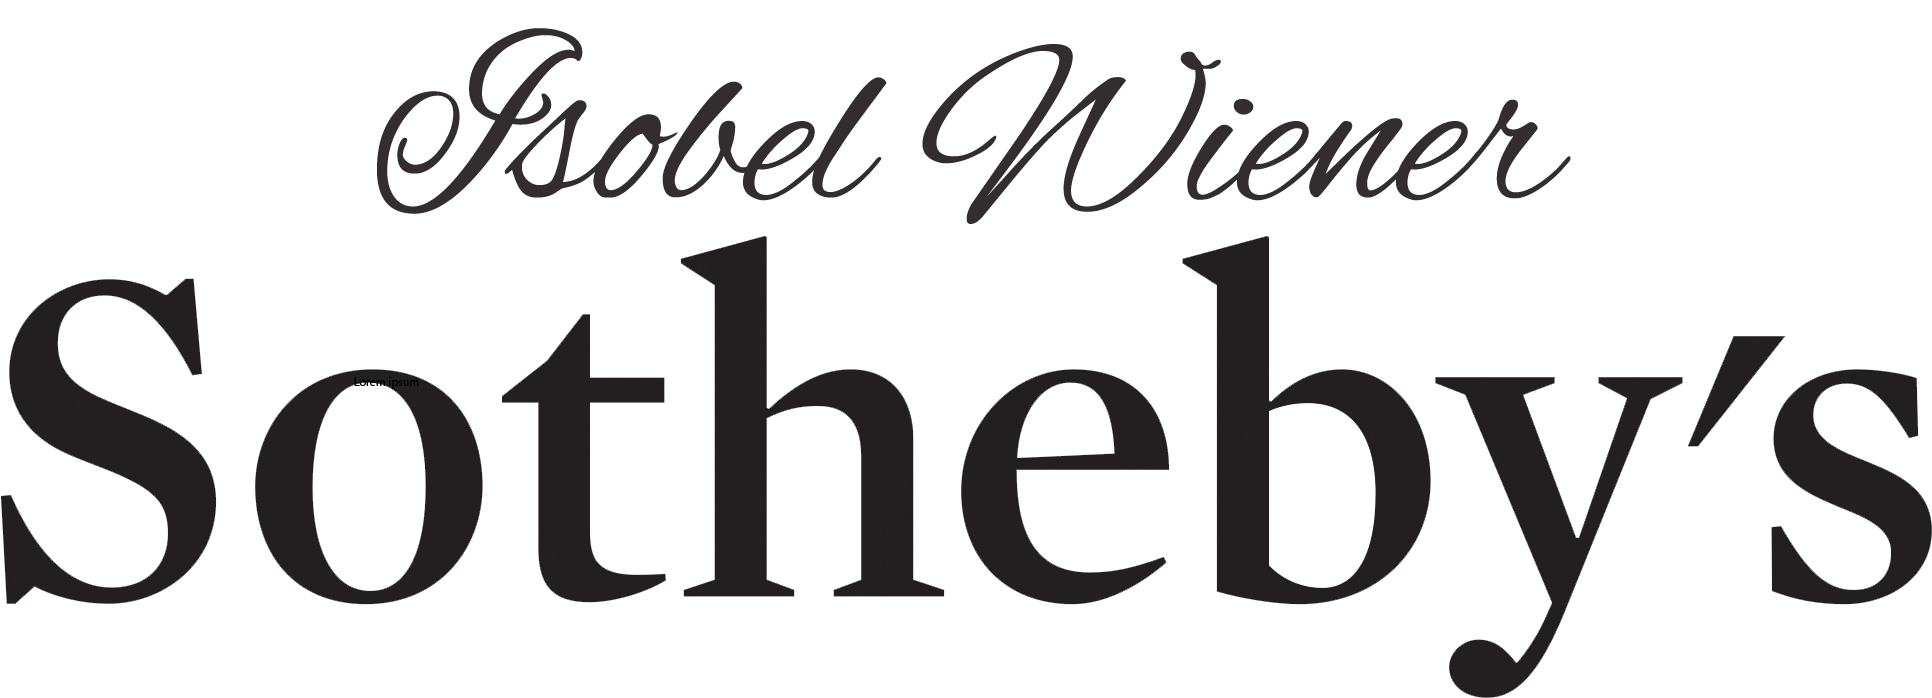 Isobel Wiener Sothebys